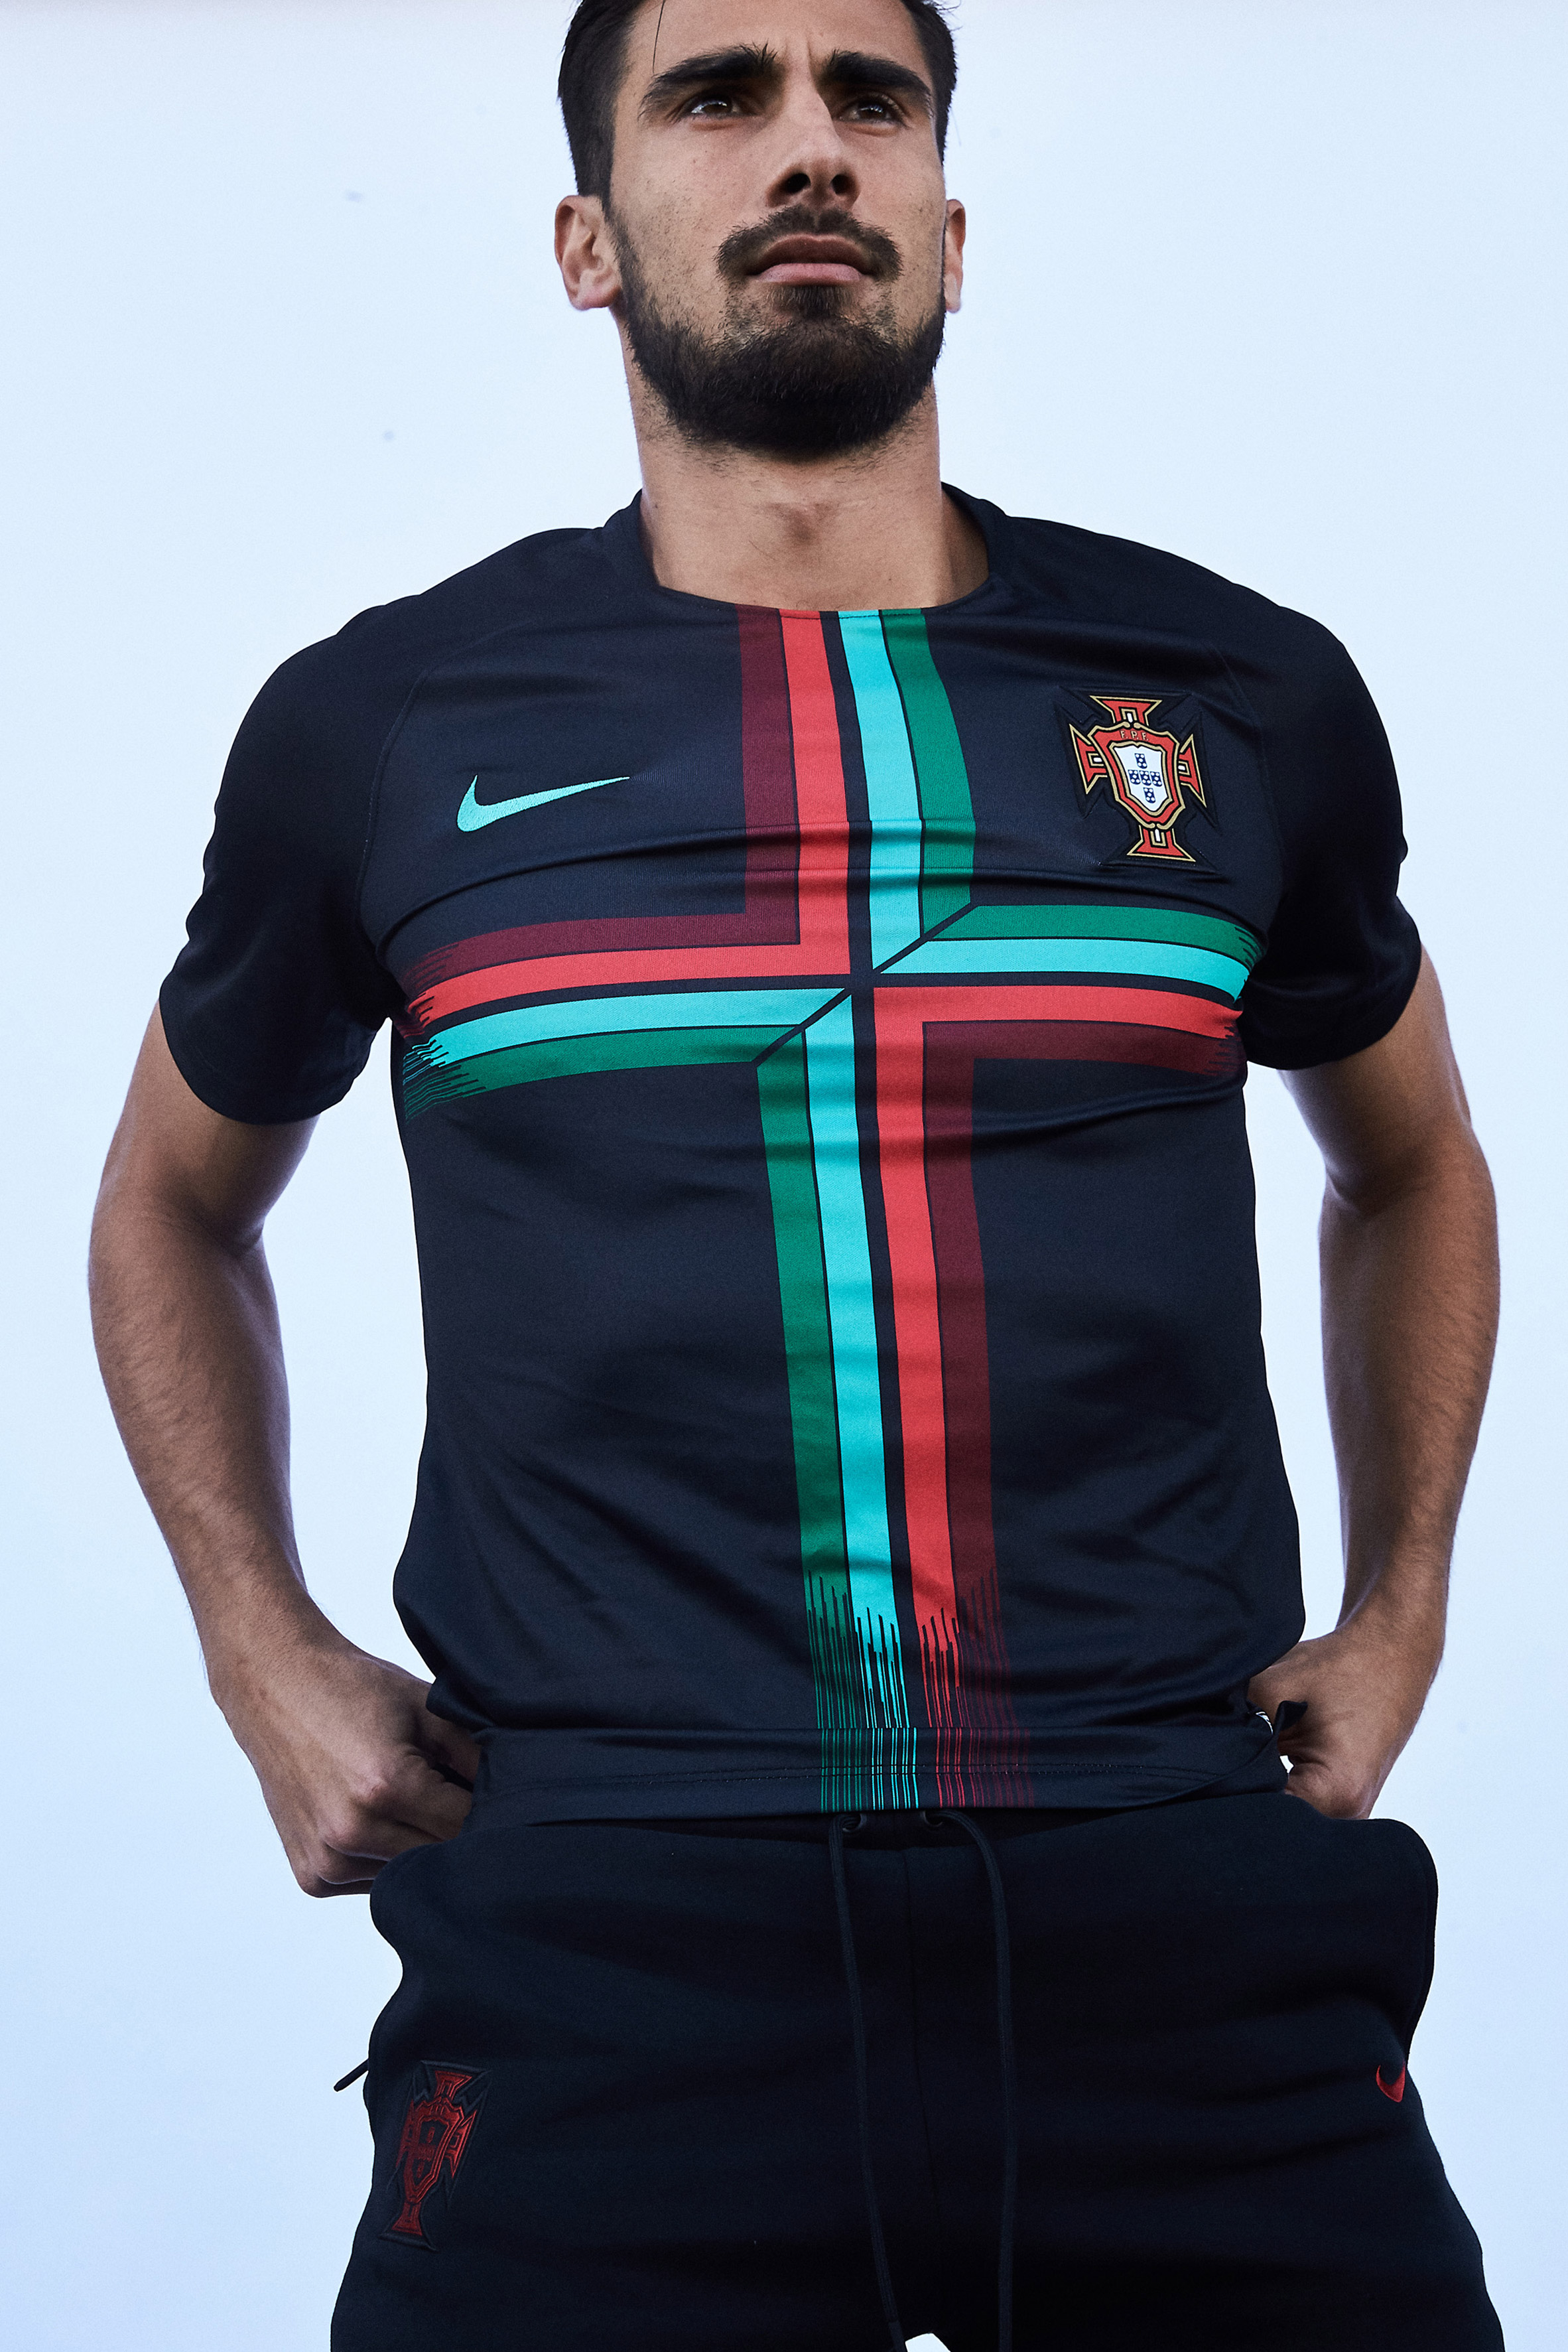 salida arrojar polvo en los ojos Calibre Portugal's World Cup 2018 strip celebrates team's recent victory in Europe